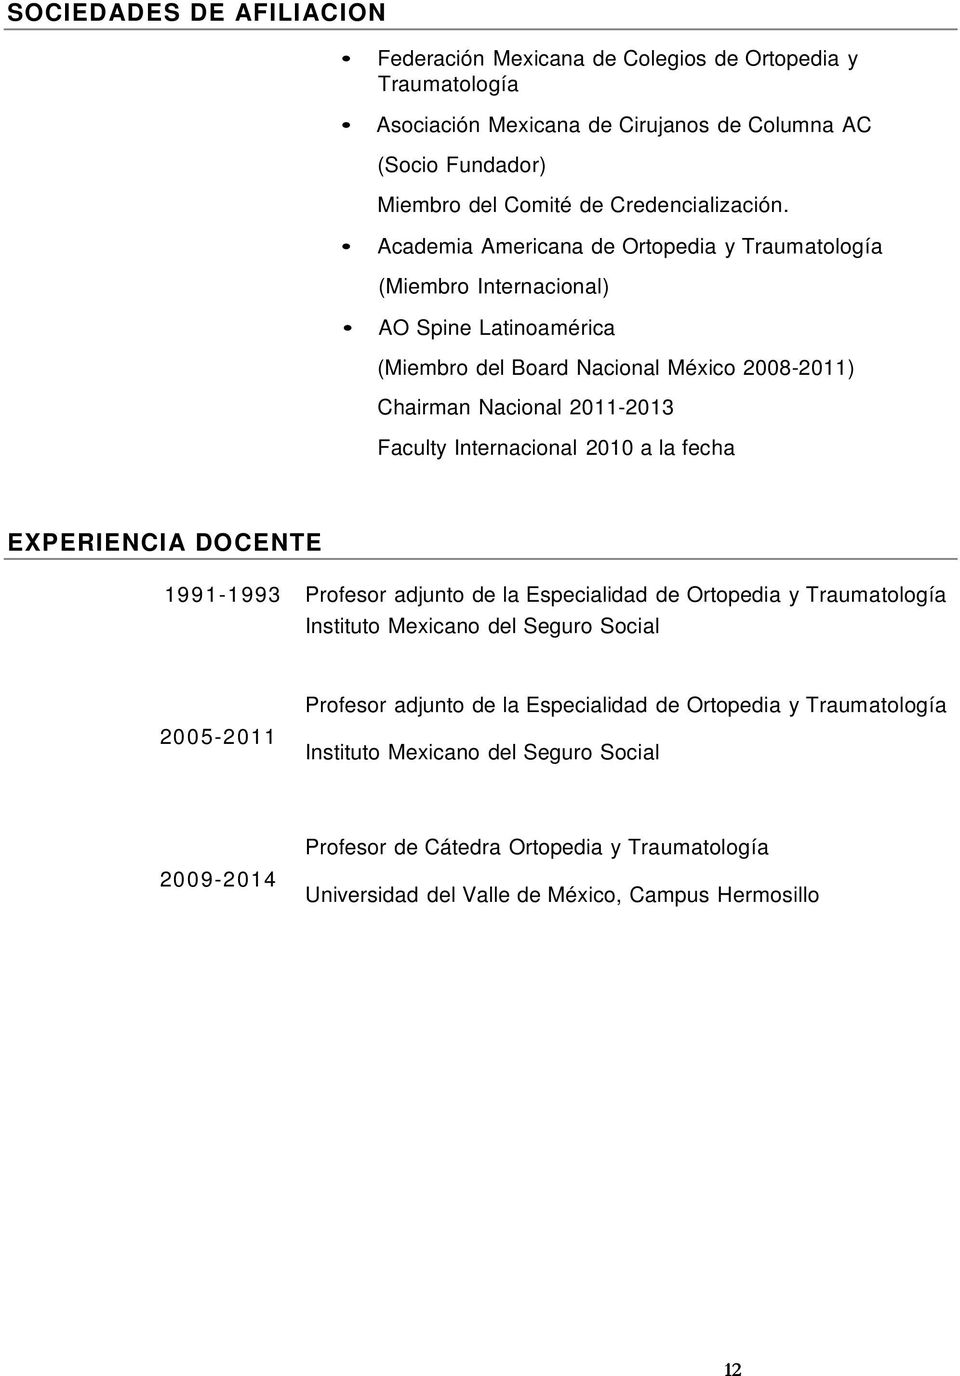 Academia Americana de Ortopedia y Traumatología (Miembro Internacional) AO Spine Latinoamérica (Miembro del Board Nacional México 2008-2011) Chairman Nacional 2011-2013 Faculty